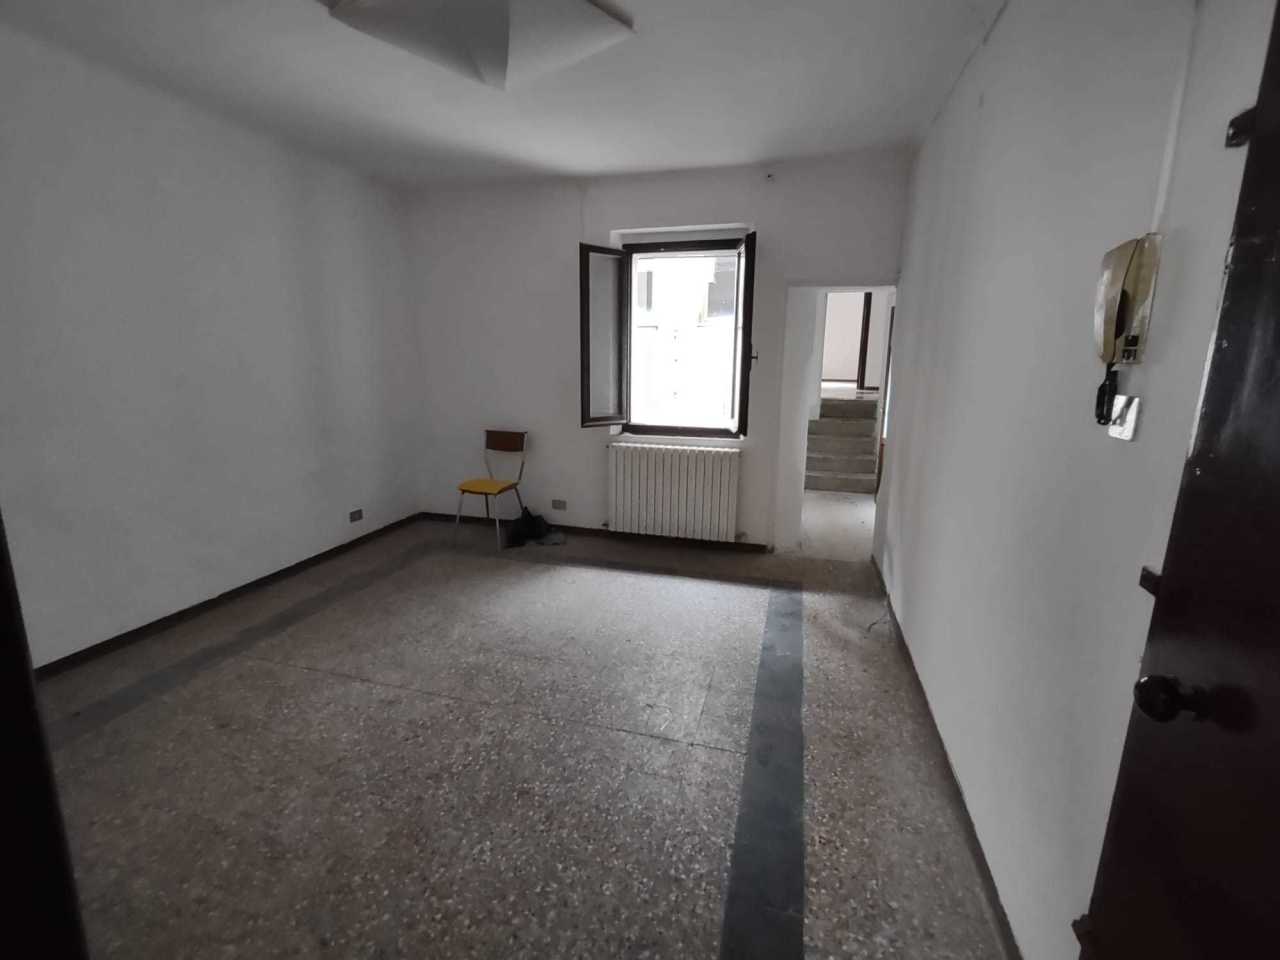 Appartamento in vendita a Jesi, 6 locali, prezzo € 75.000 | PortaleAgenzieImmobiliari.it